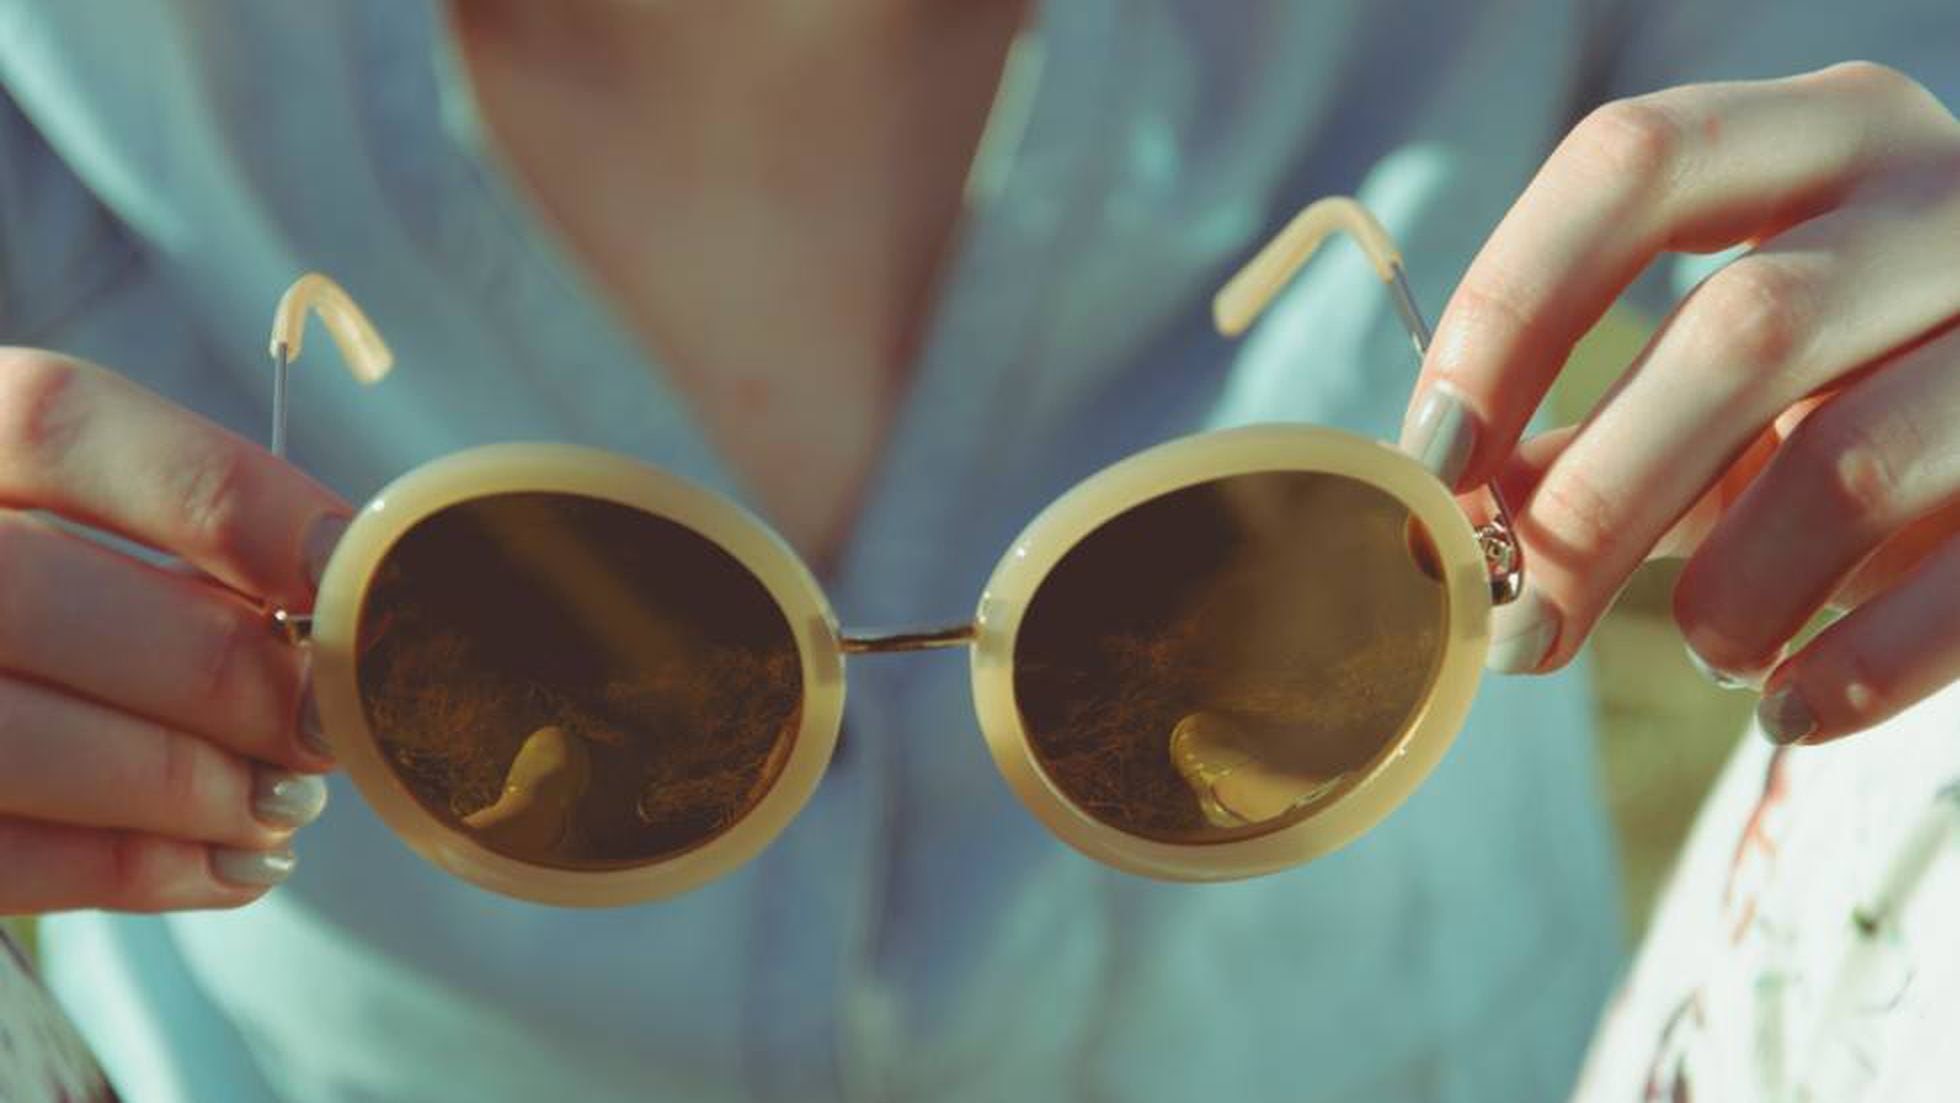 Ceniza interior ocupado Las 12 mejores gafas de sol de diseño para mujer, según S Moda |  Escaparate: compras y ofertas | EL PAÍS